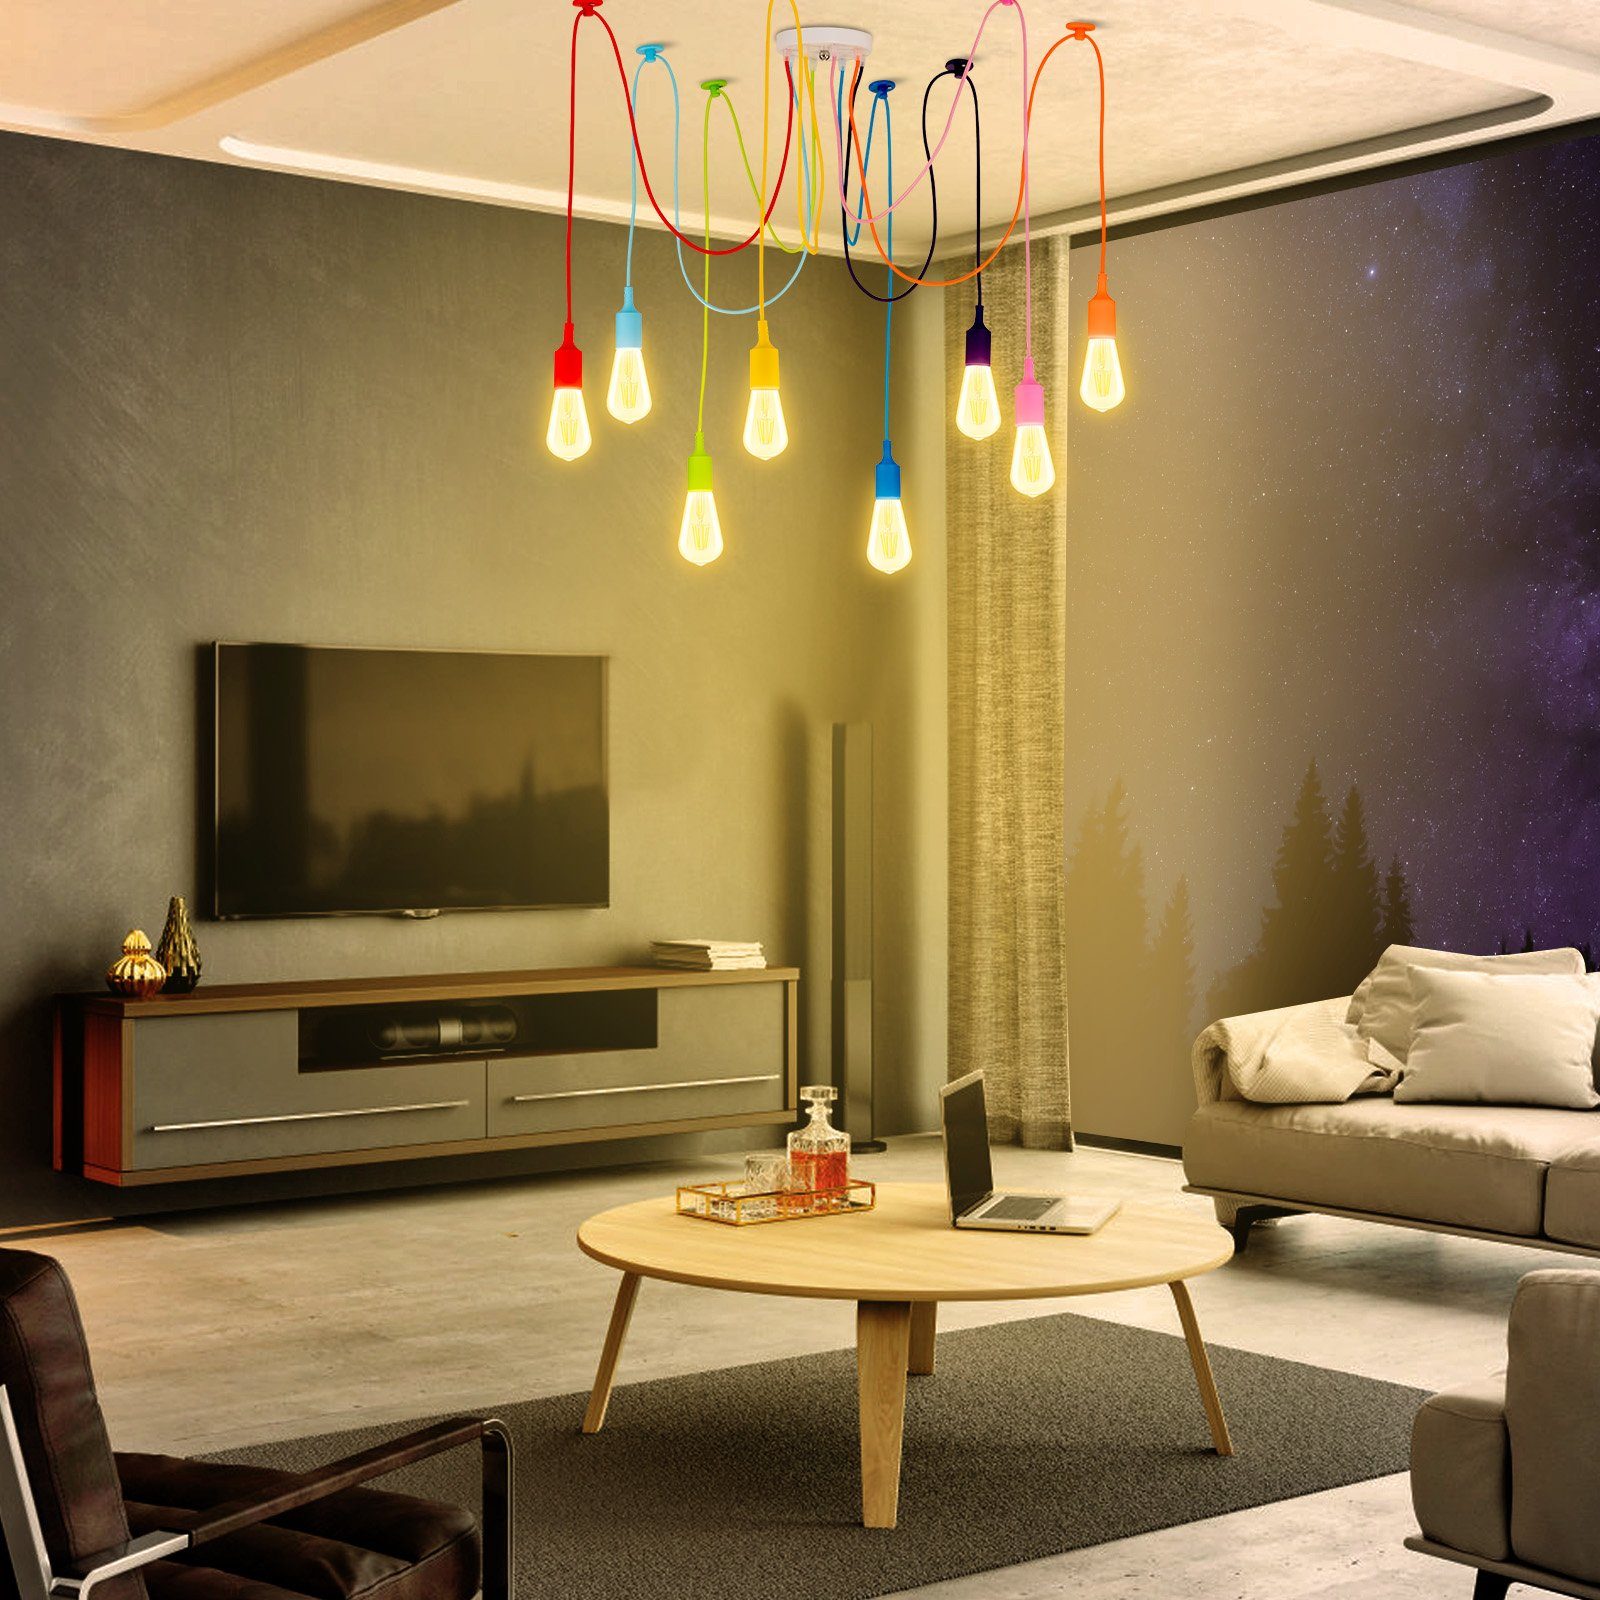 Rosnek LED Wohnzimmer Schlafzimmer ST64 E27, 4/8-Köpfe, Glaskolben, für Pendelleuchte Bunt Vintage, weiß/warmweiß Deko